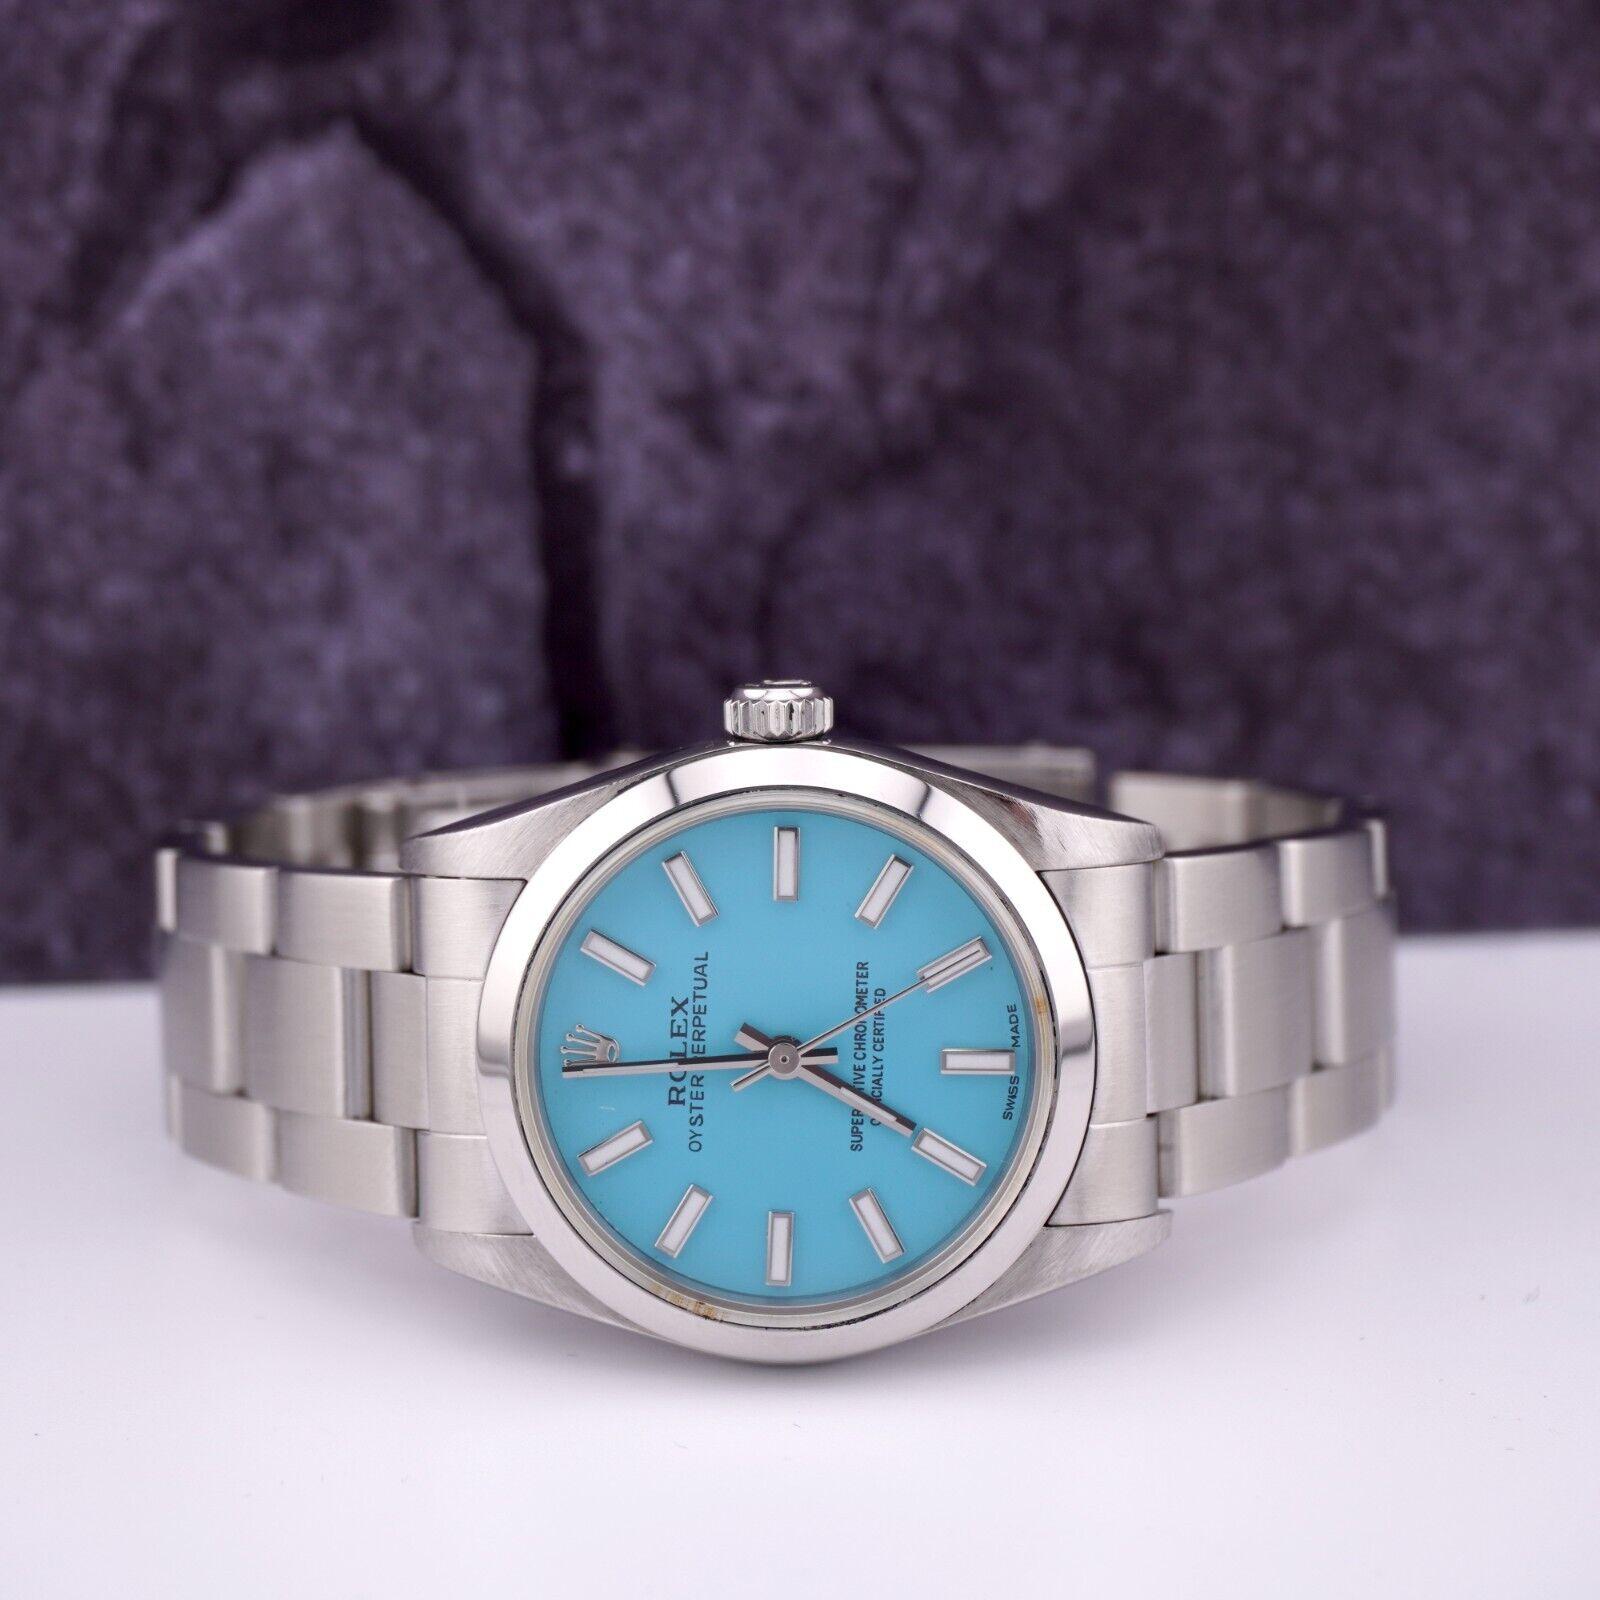 Reloj Rolex Oyster Perpetual 31mm

Seminuevo con caja de regalo
Tarjeta de autenticidad 100% auténtica
Estado - (Buen estado) - Ver fotos
Referencia del reloj - 77080
Modelo - Oyster Perpetual
Color de la esfera - Azul Tiffany
Material - Acero